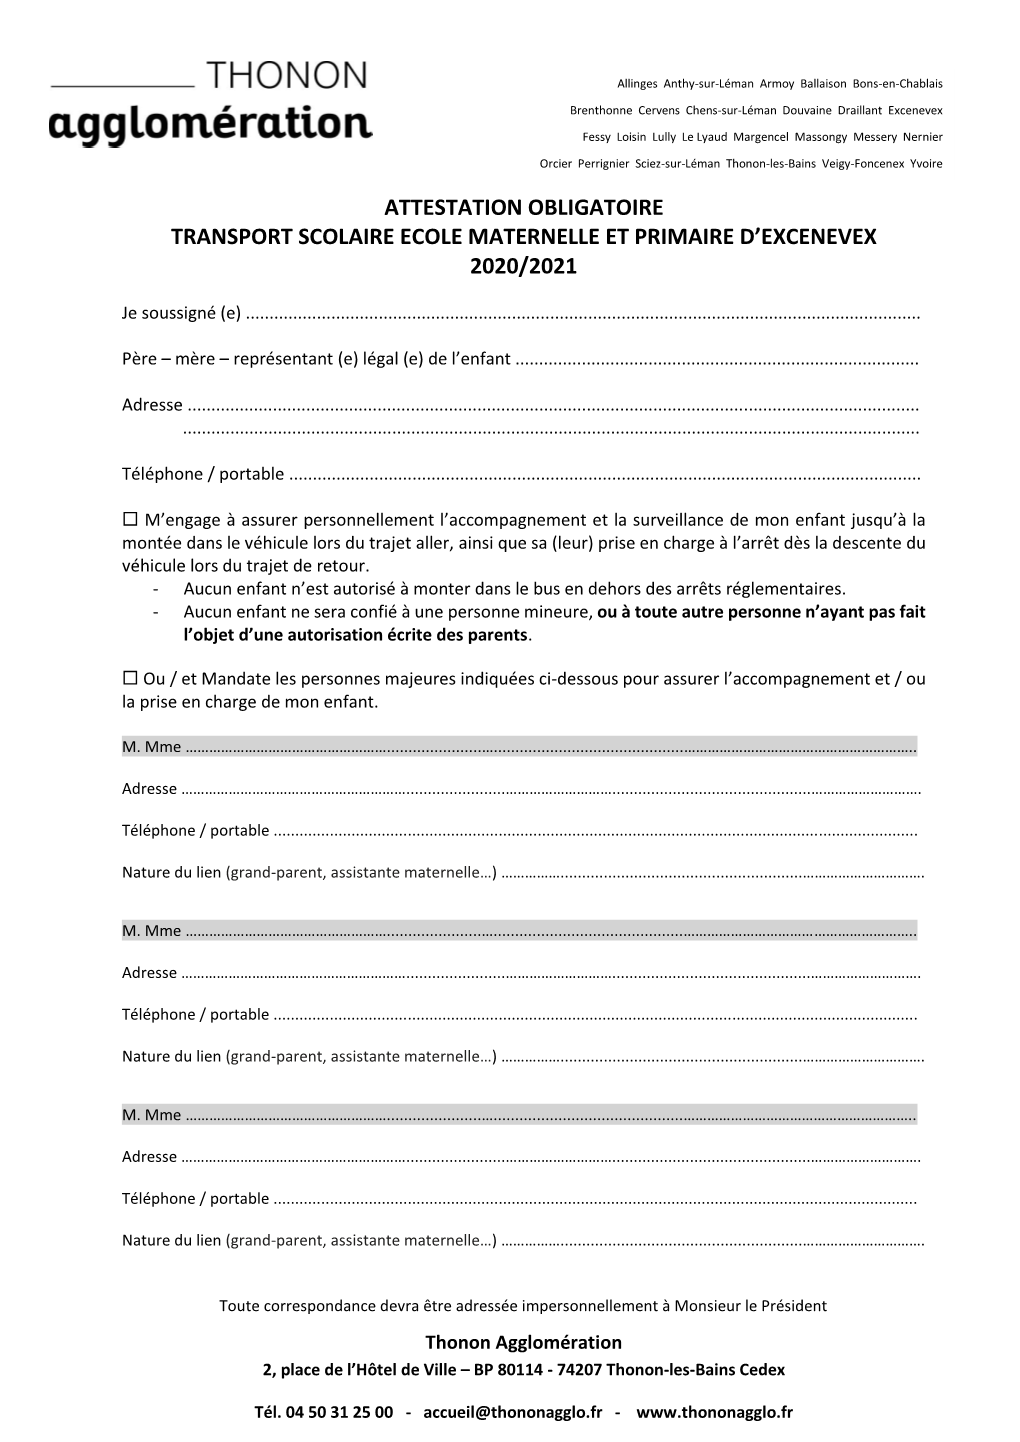 Attestation Obligatoire Transport Scolaire Ecole Maternelle Et Primaire D’Excenevex 2020/2021